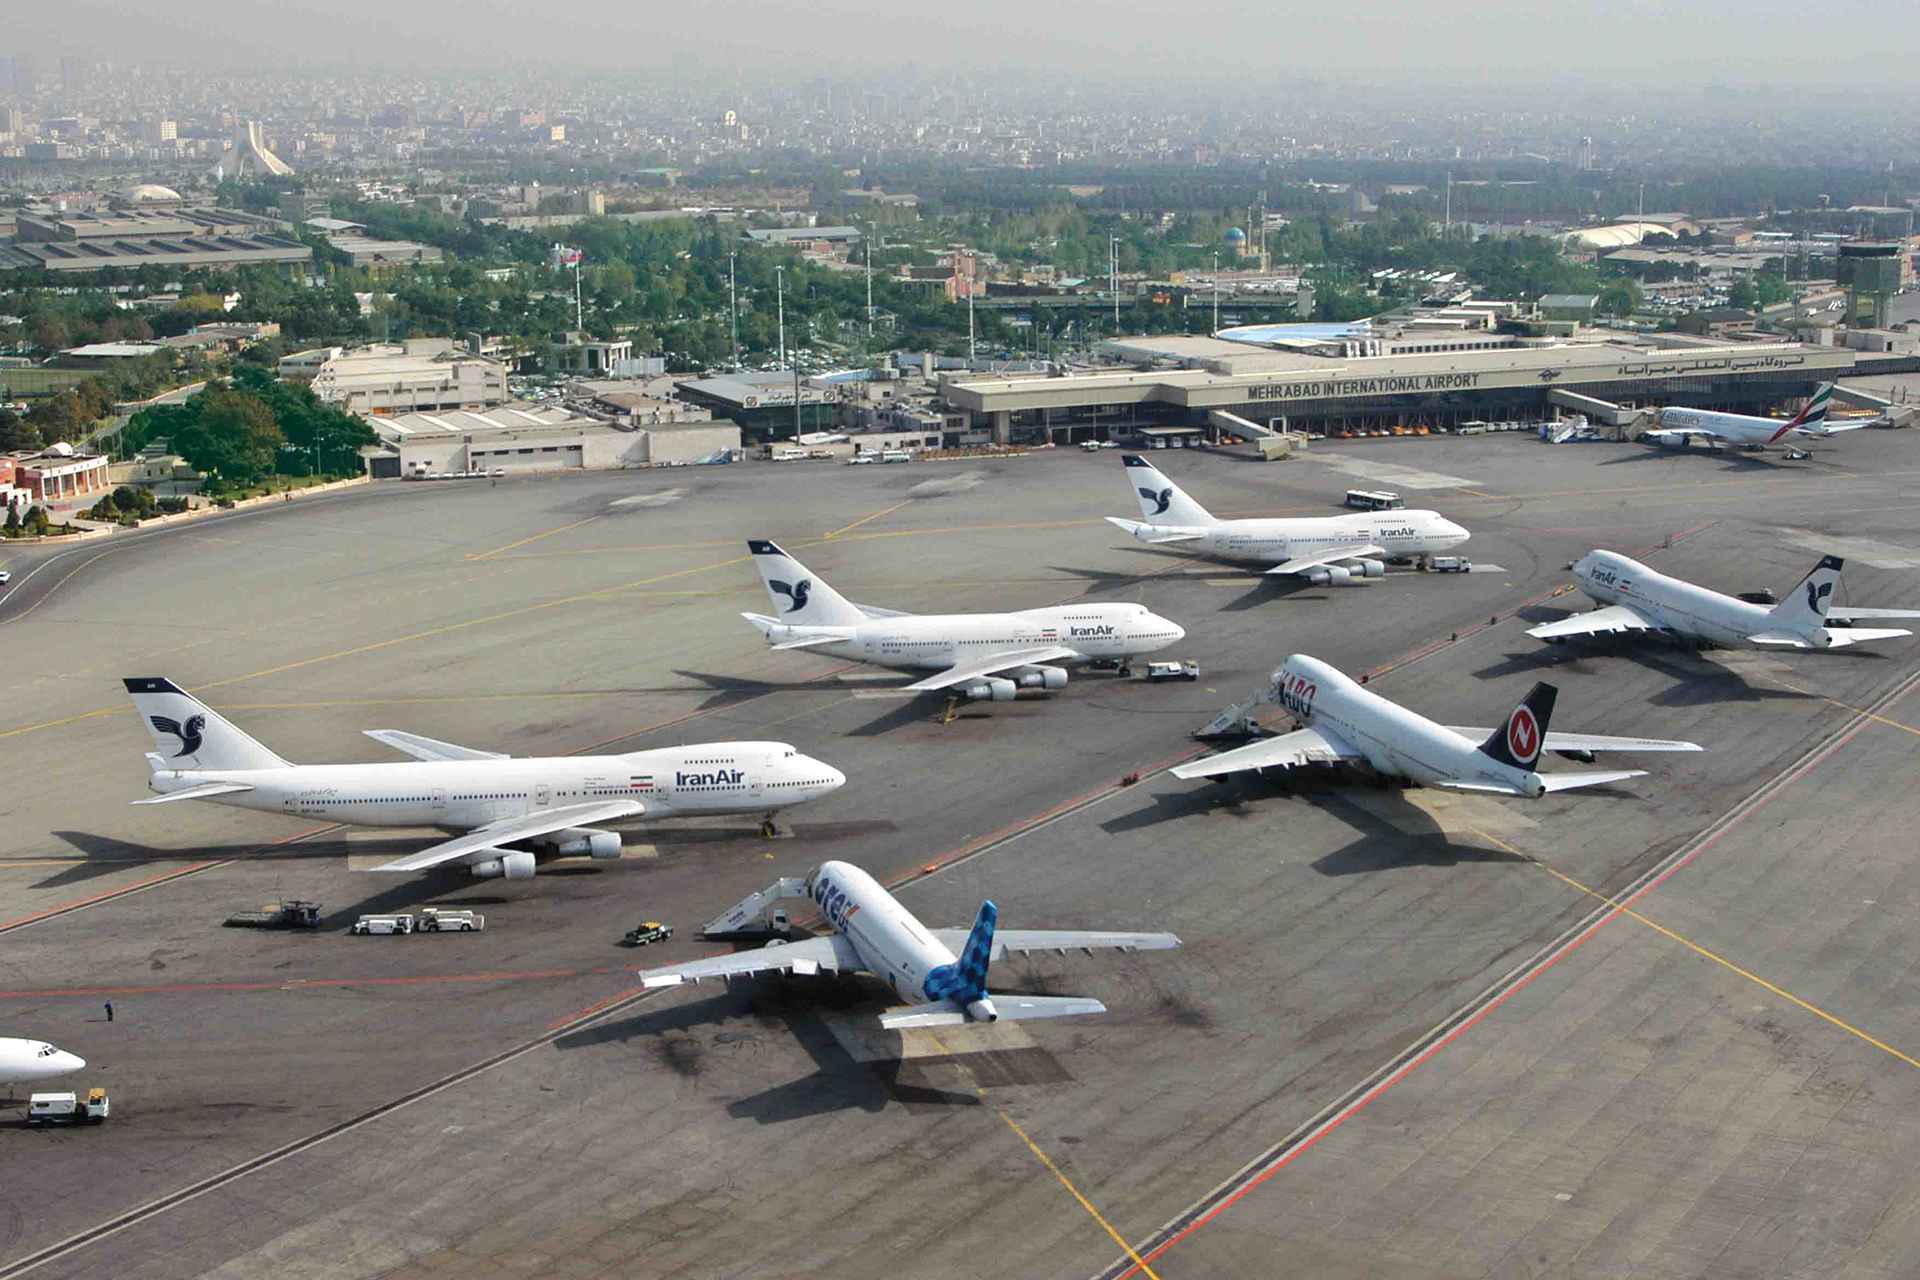 Международный аэропорт Мехрабад